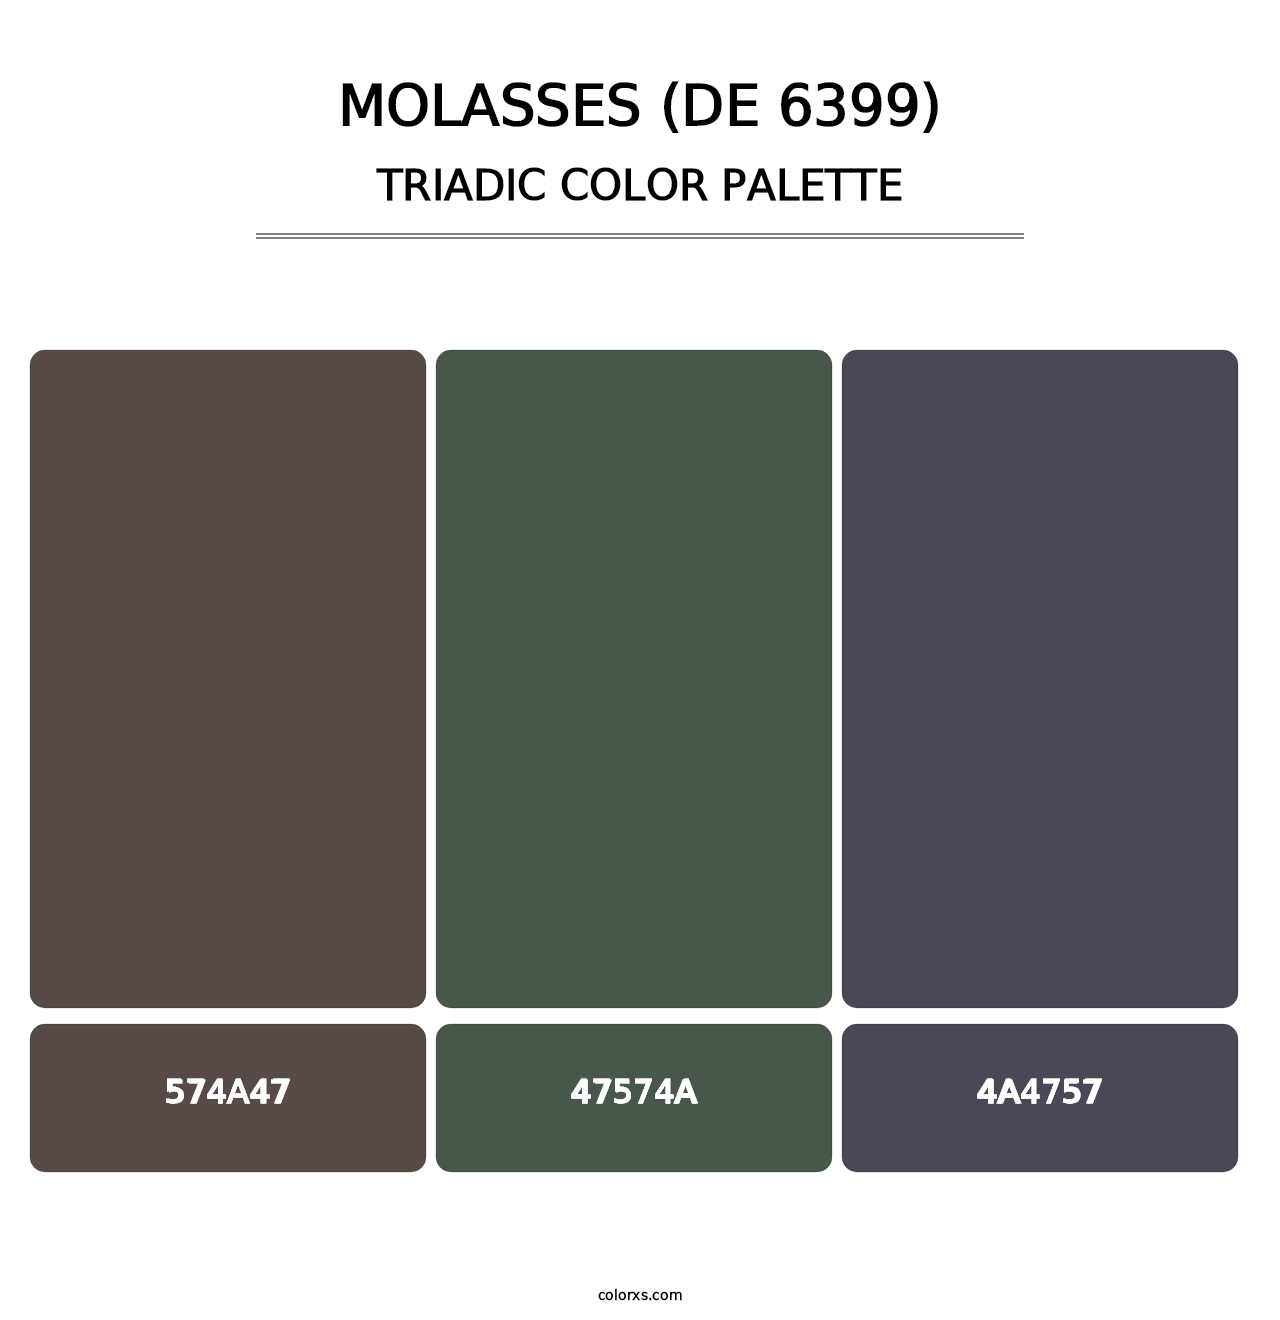 Molasses (DE 6399) - Triadic Color Palette